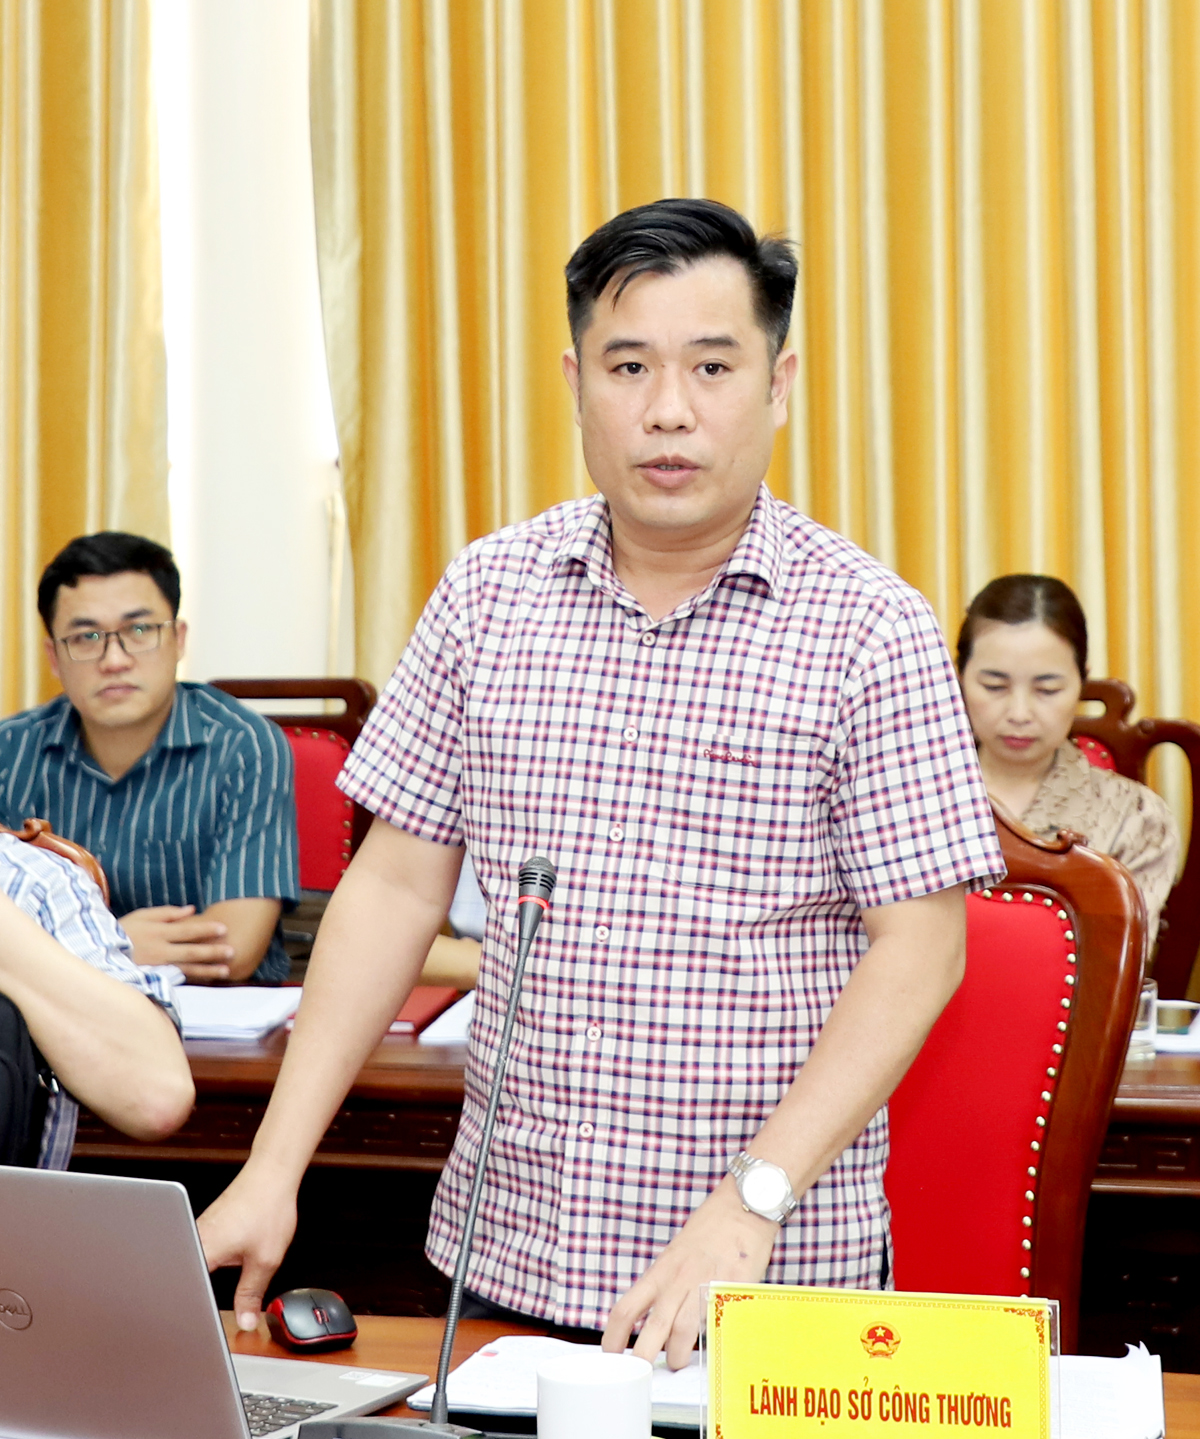 Lãnh đạo Sở Công thương đề nghị huyện Quang Bình đẩy mạnh hoạt động thương mại gắn với chuyển đổi số để đưa các sản phẩm nông sản lên sàn giao dịch thương mại điện tử.